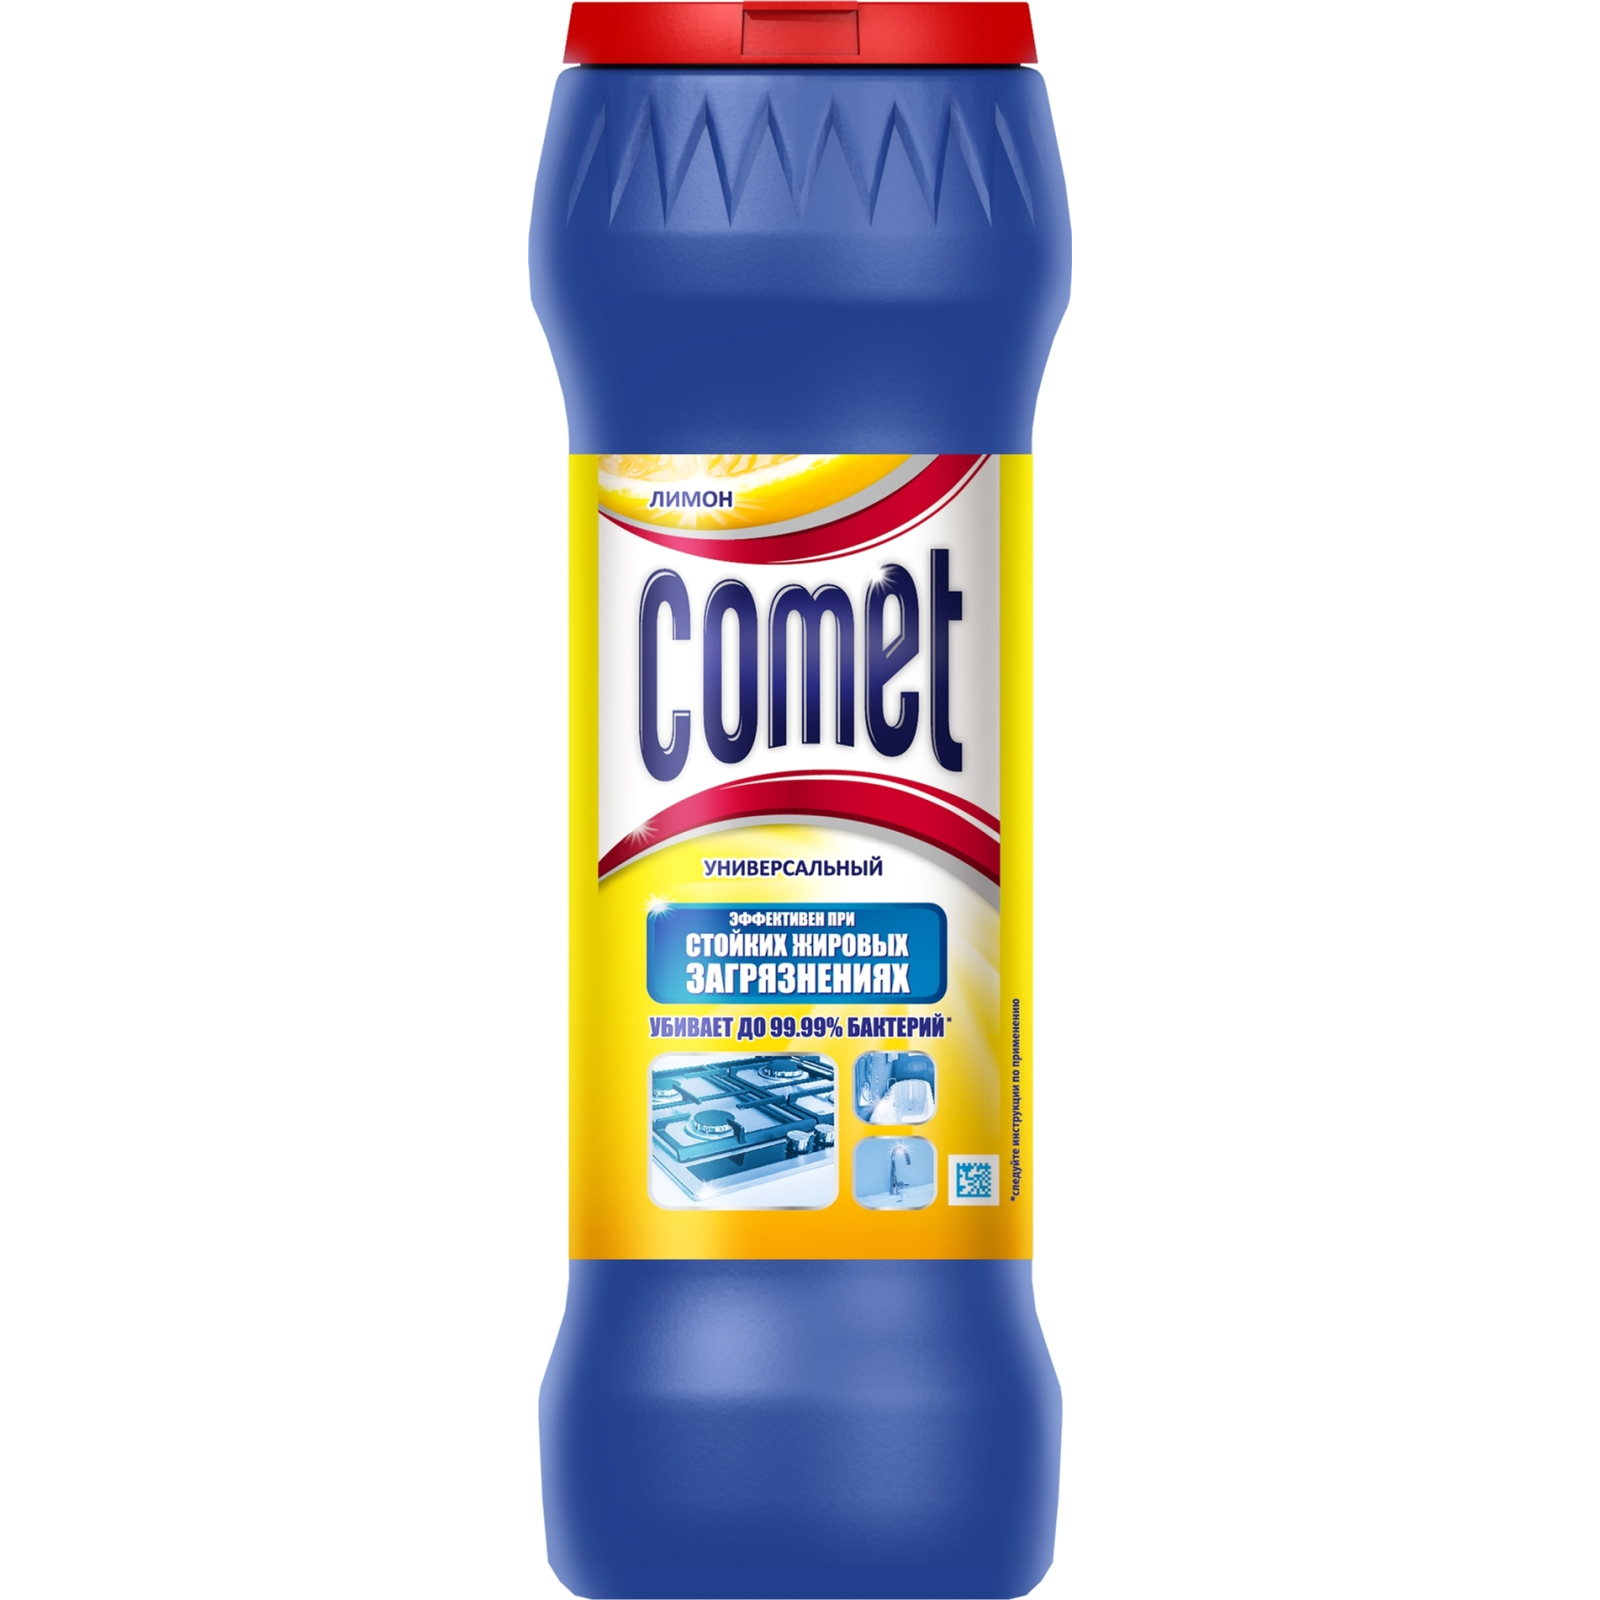 Порошок для чистки кухни Comet Лимон 475г (8001480024724)